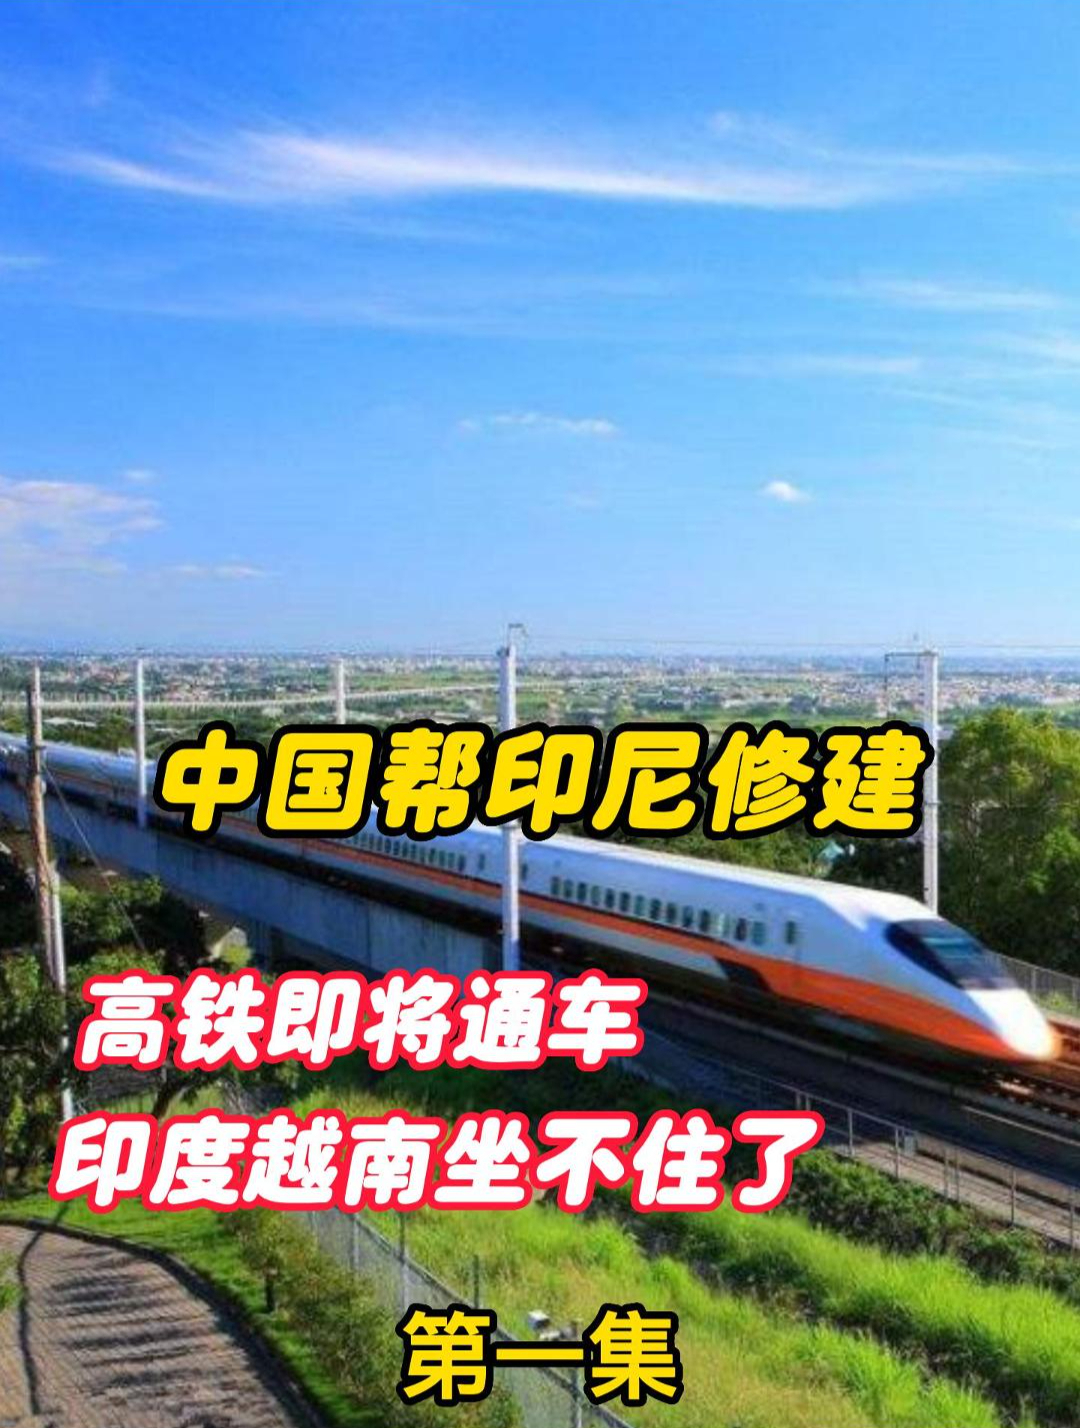 中国帮印尼修建高铁即将通车,印度越南坐不住了,后悔来得及吗?